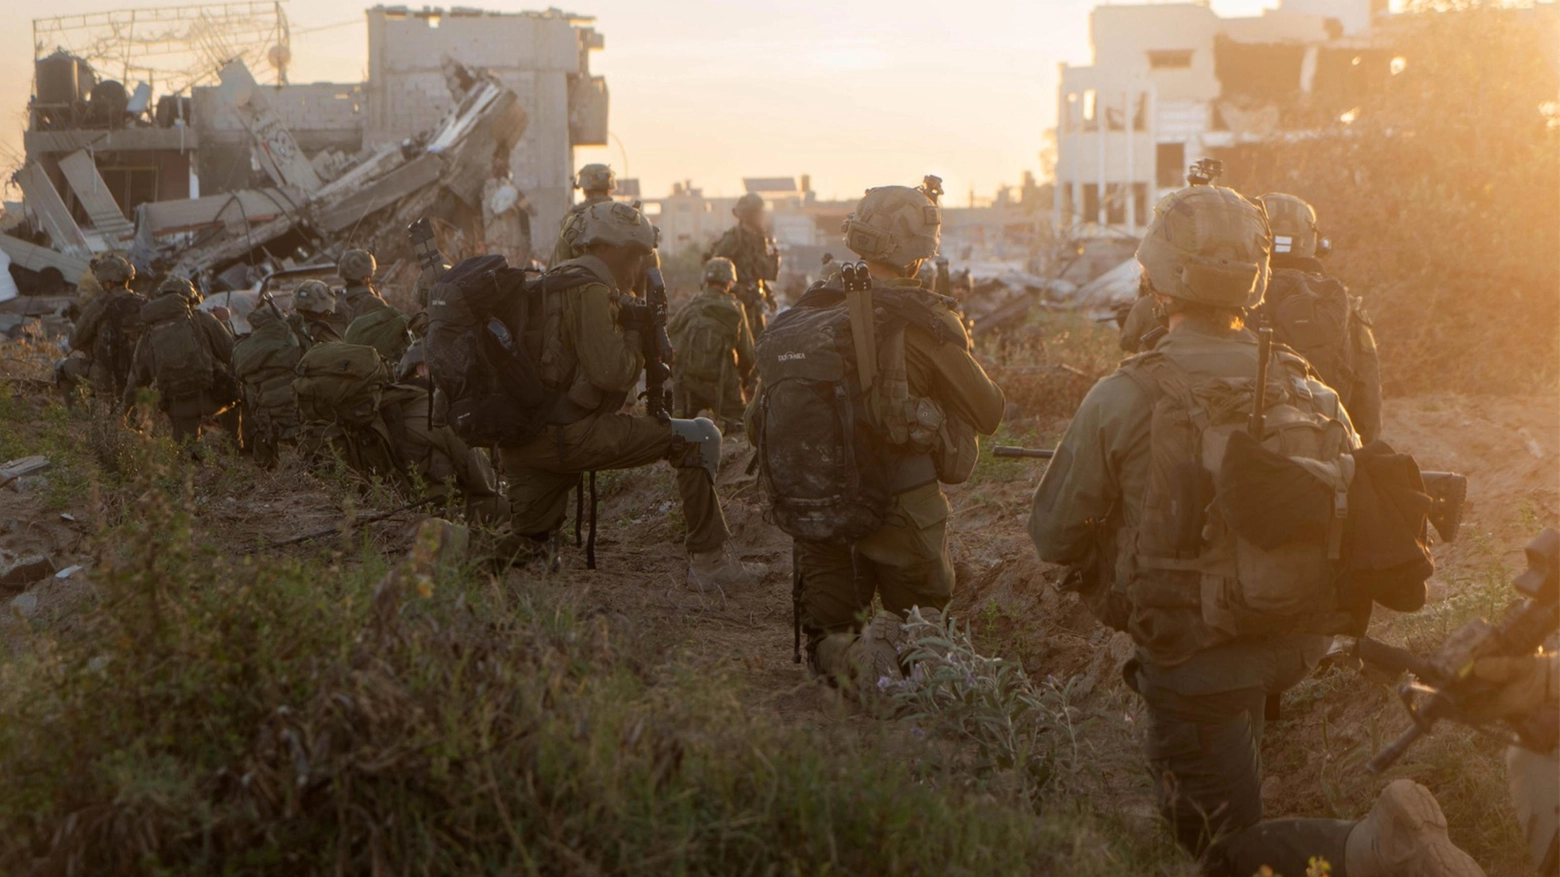 Accusa di Gilad Erdan, rappresentante delIo Stato ebraico alle Nazioni Unite. Idf: primo soldato ucciso nell’avanzata. Media: raid su Gaza, 7 morti e 11 feriti. Al Jazeera: colpita clinica Unrwa, almeno 10 vittime